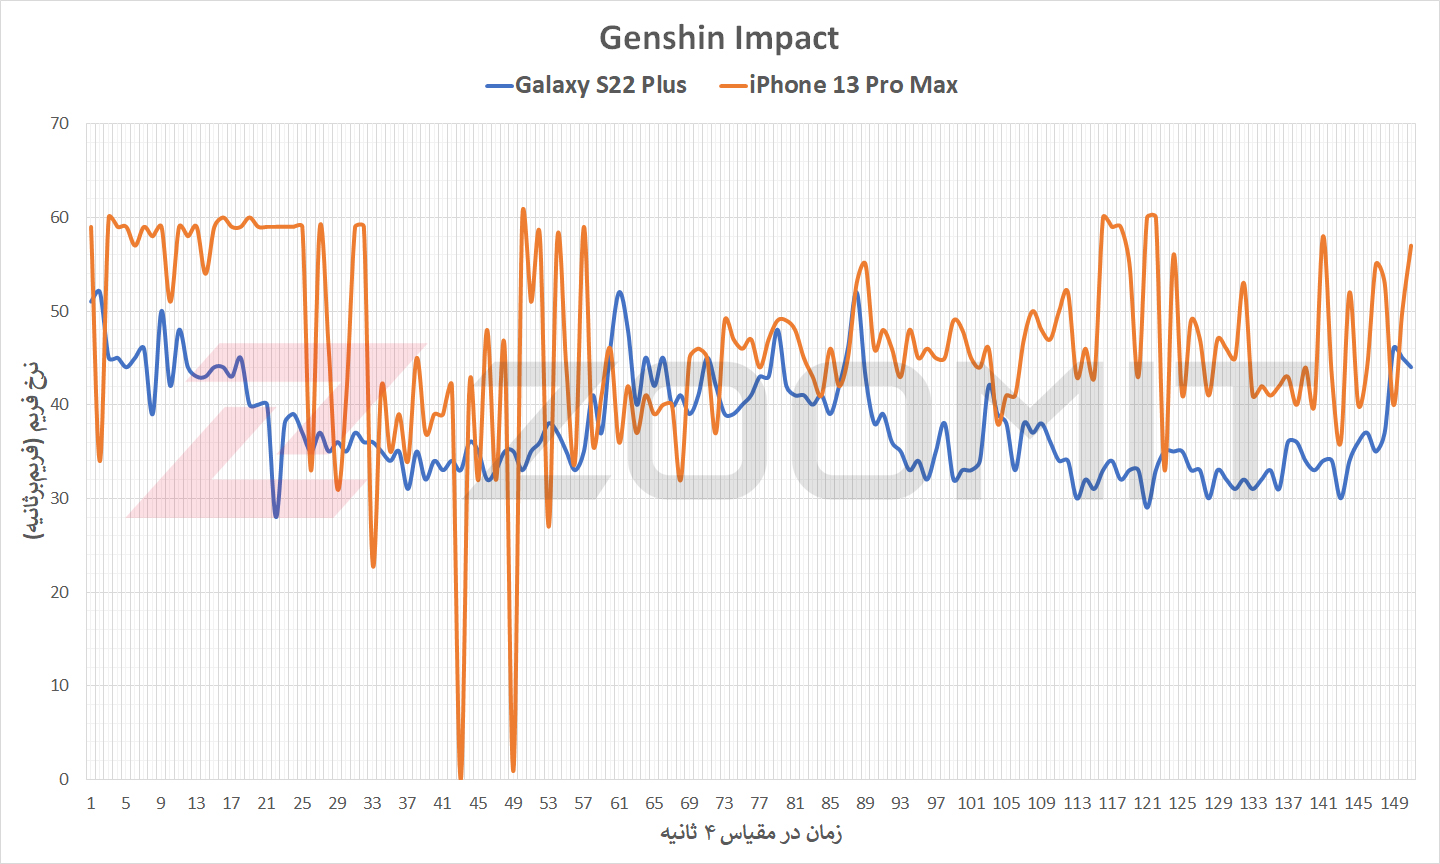 عملکرد گلکسی S22 پلاس در مقایسه با آیفون ۱۳ پرو مکس حین اجرای بازی Genshin Impact